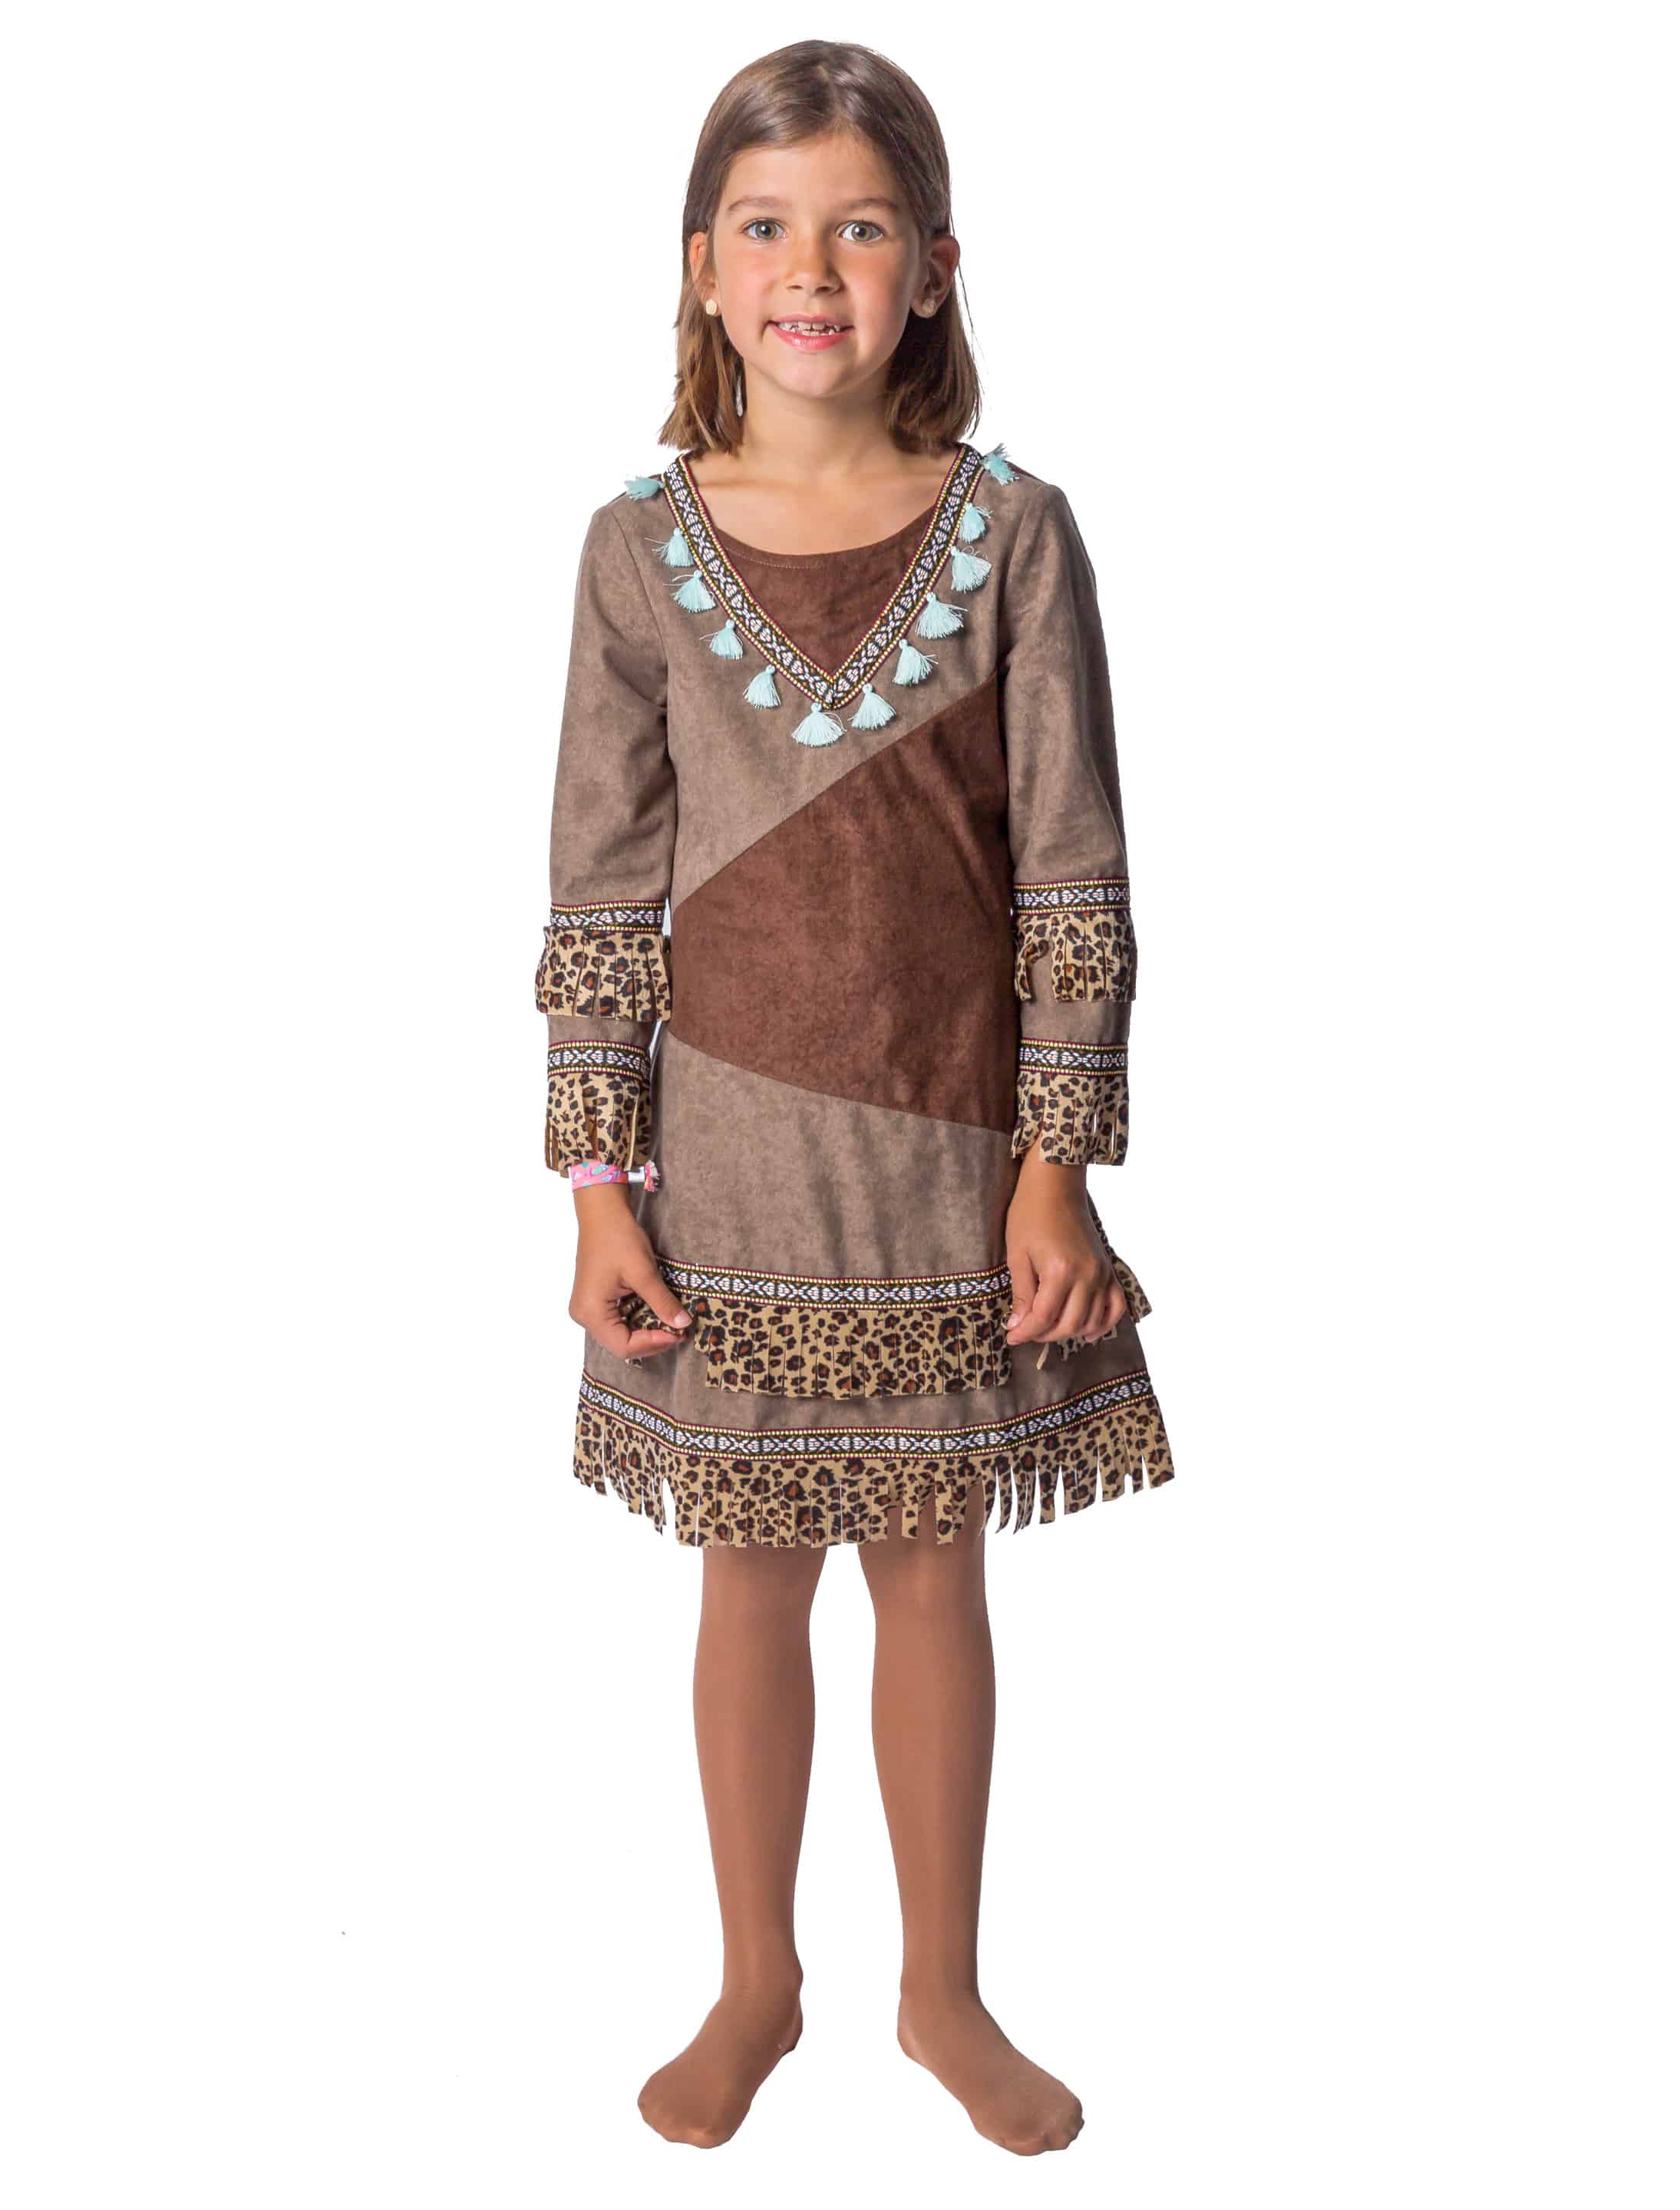 Kleid Indianerin Kinder Mädchen dunkelbraun 116